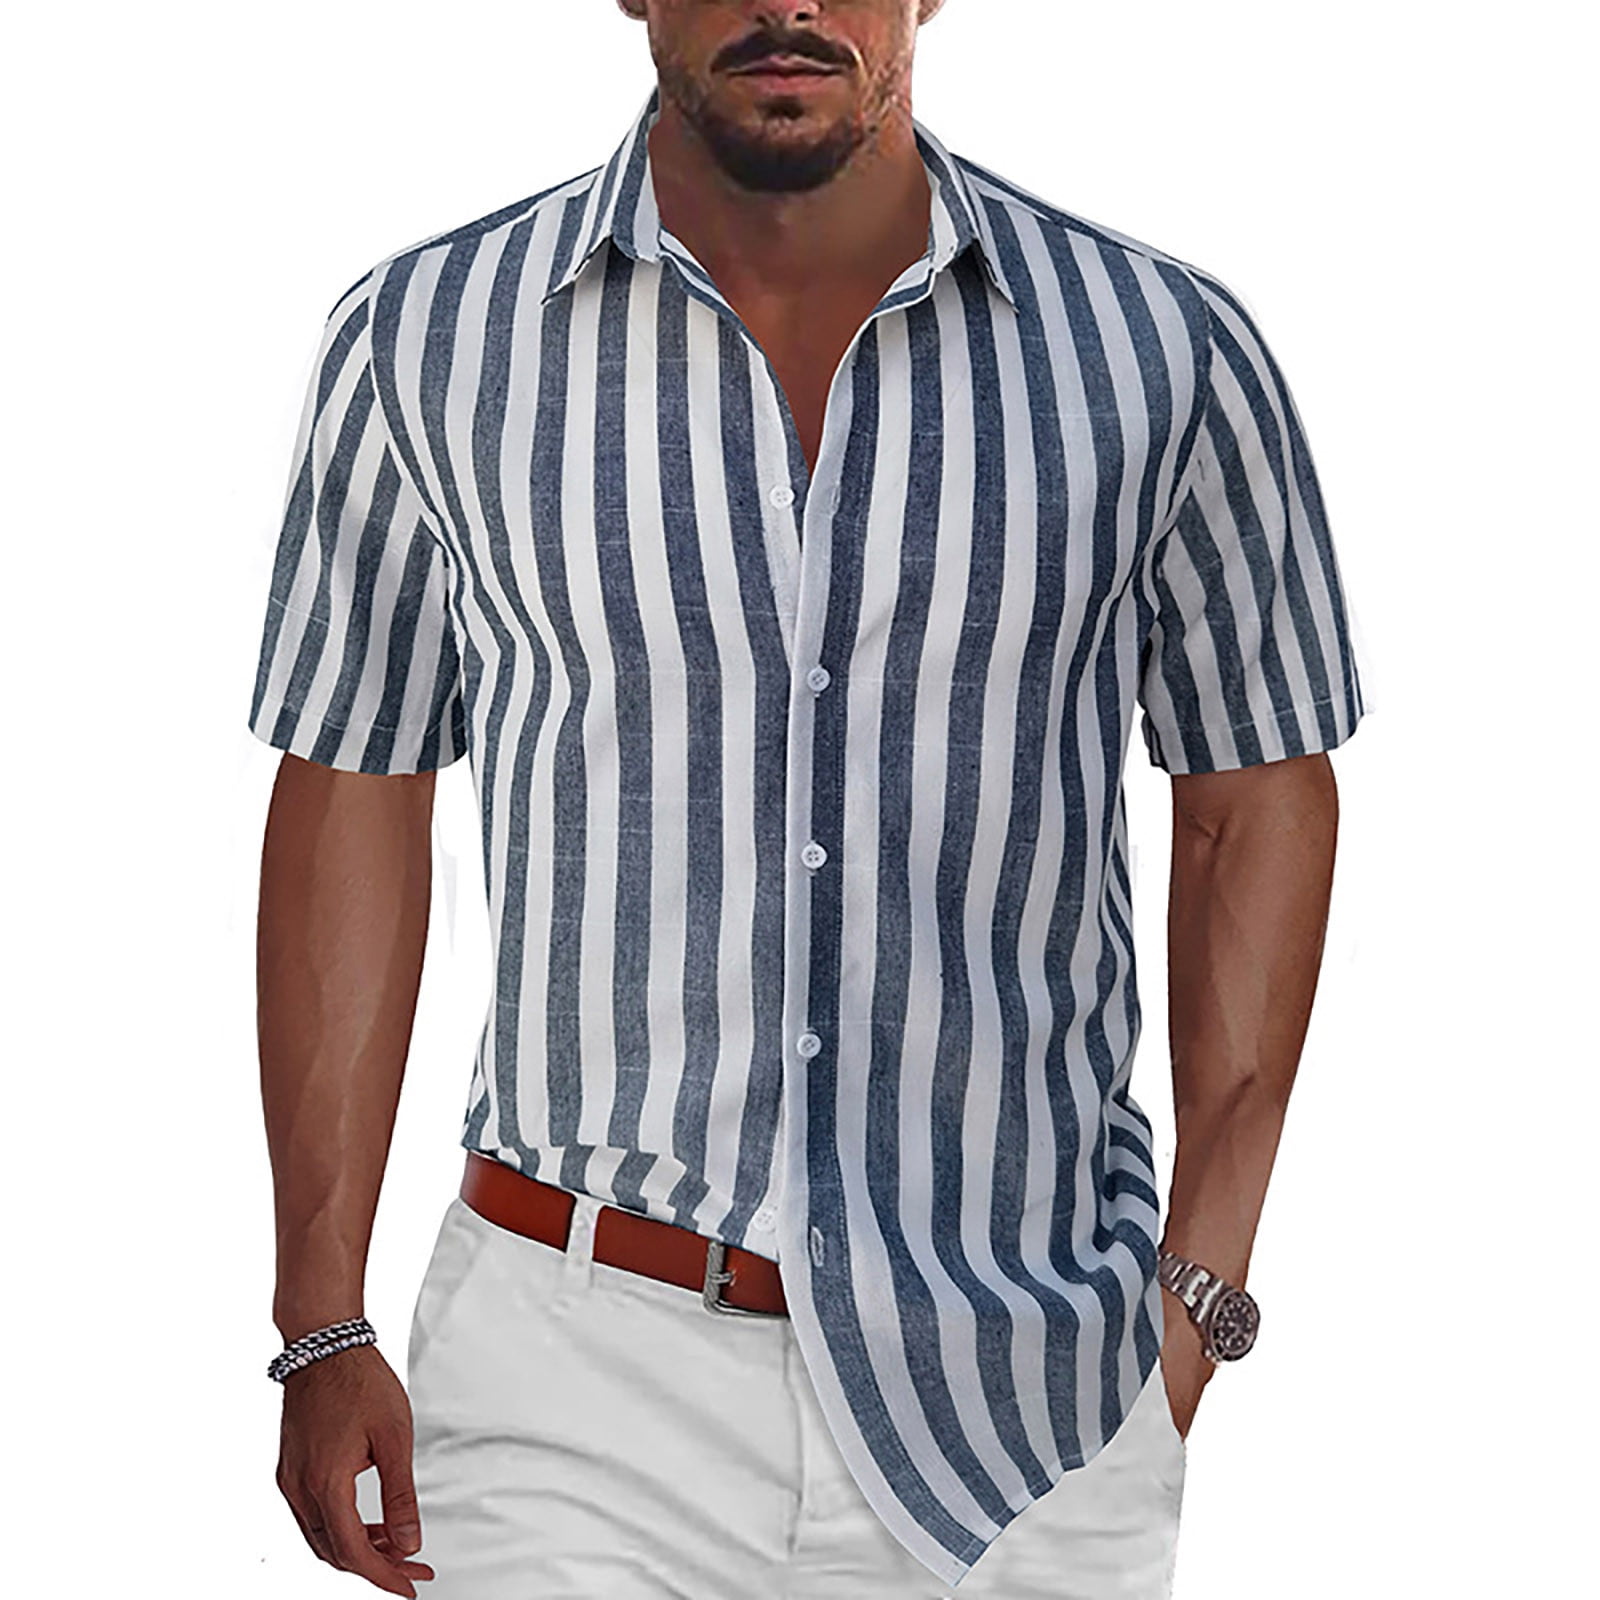 SAINT Mxxxxxx Logo-Appliquéd Striped Piqué Jersey - Men - Blue T-shirts - One size